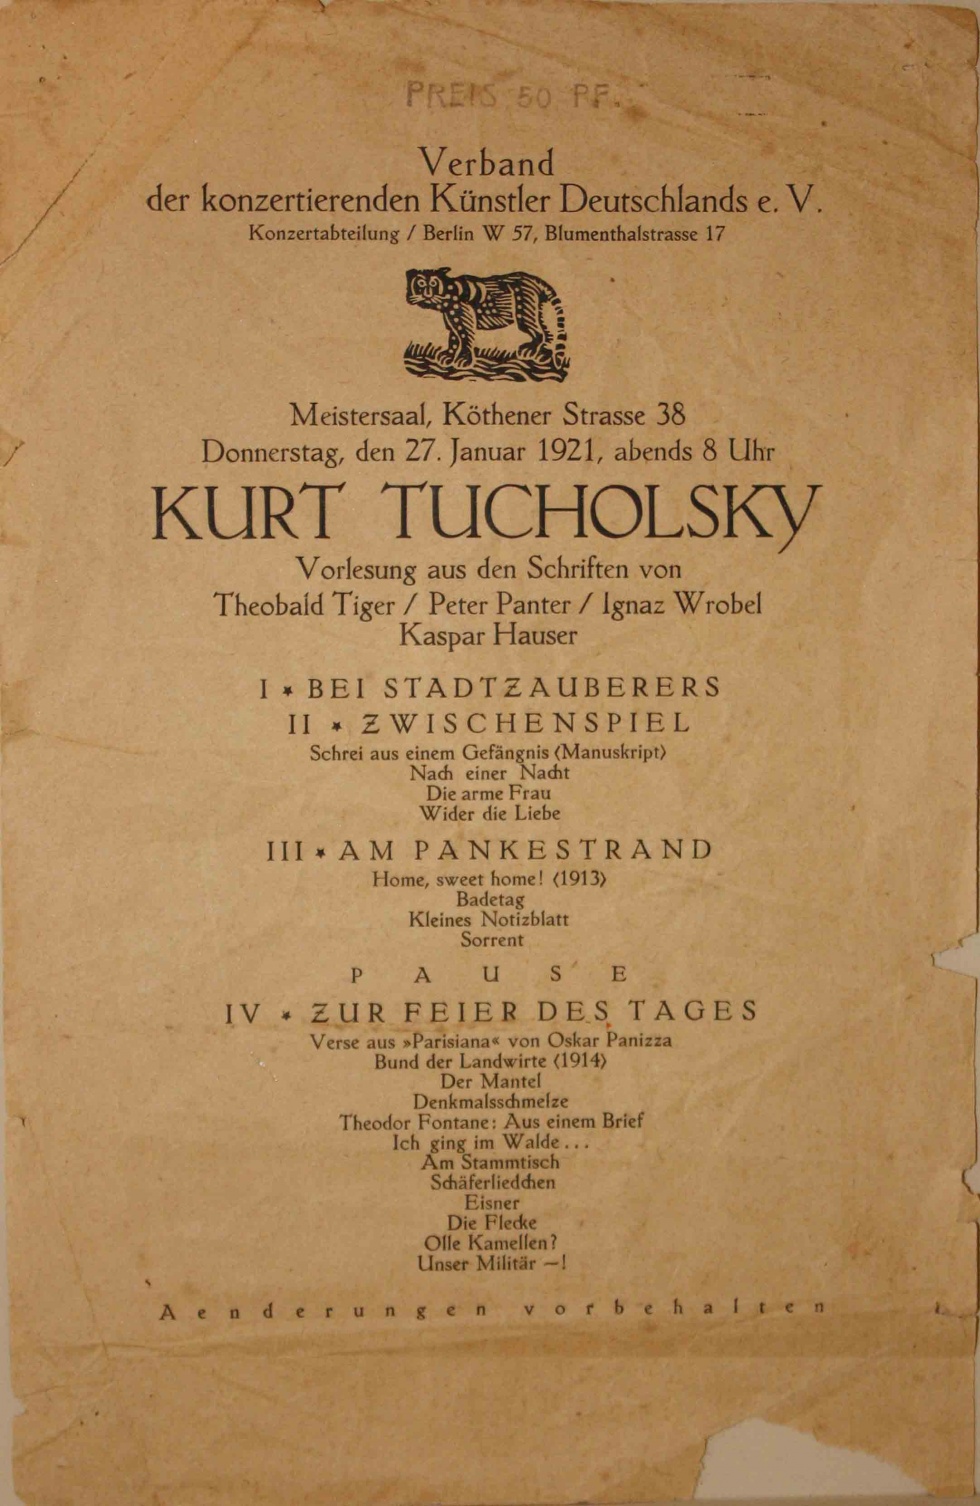 Programmzettel vom Verband der konzertierenden Künstler Deutschlands e.V. (Kurt Tucholsky Literaturmuseum CC BY-NC-SA)